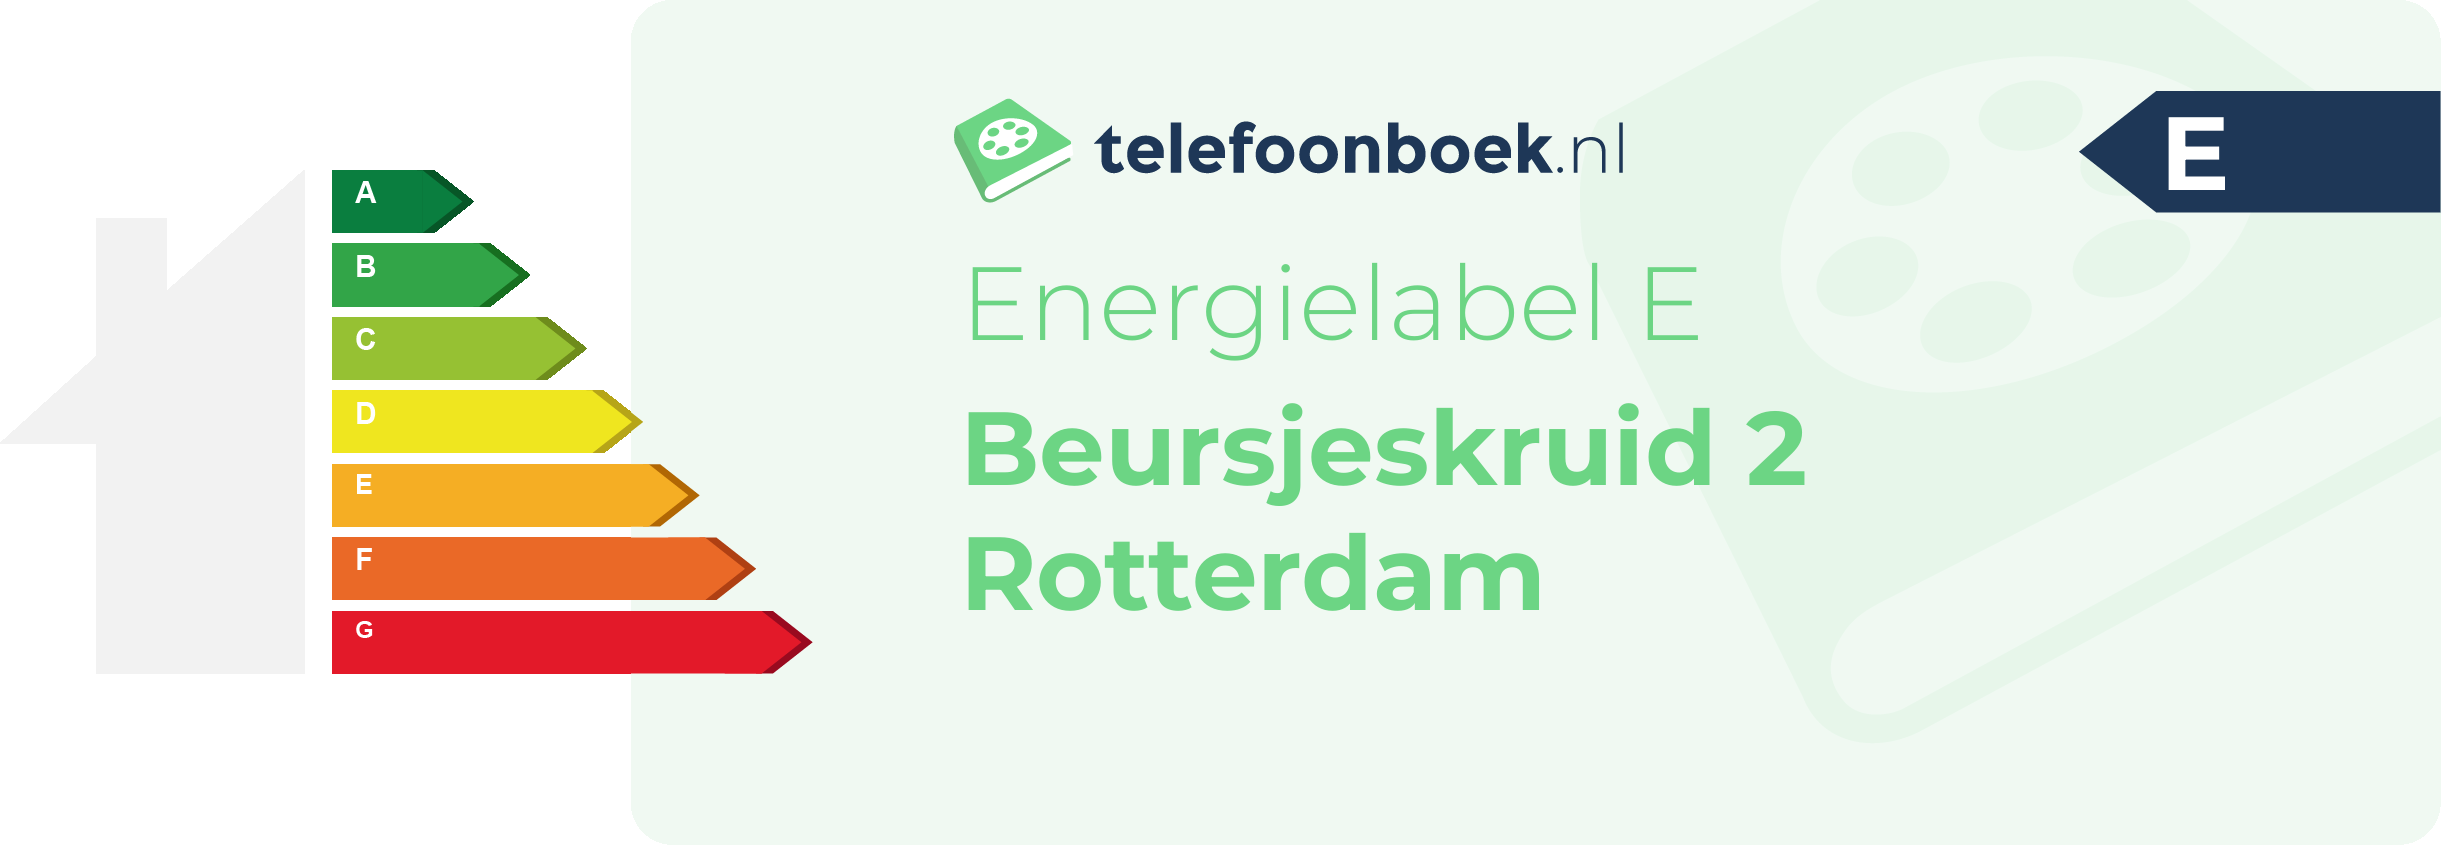 Energielabel Beursjeskruid 2 Rotterdam